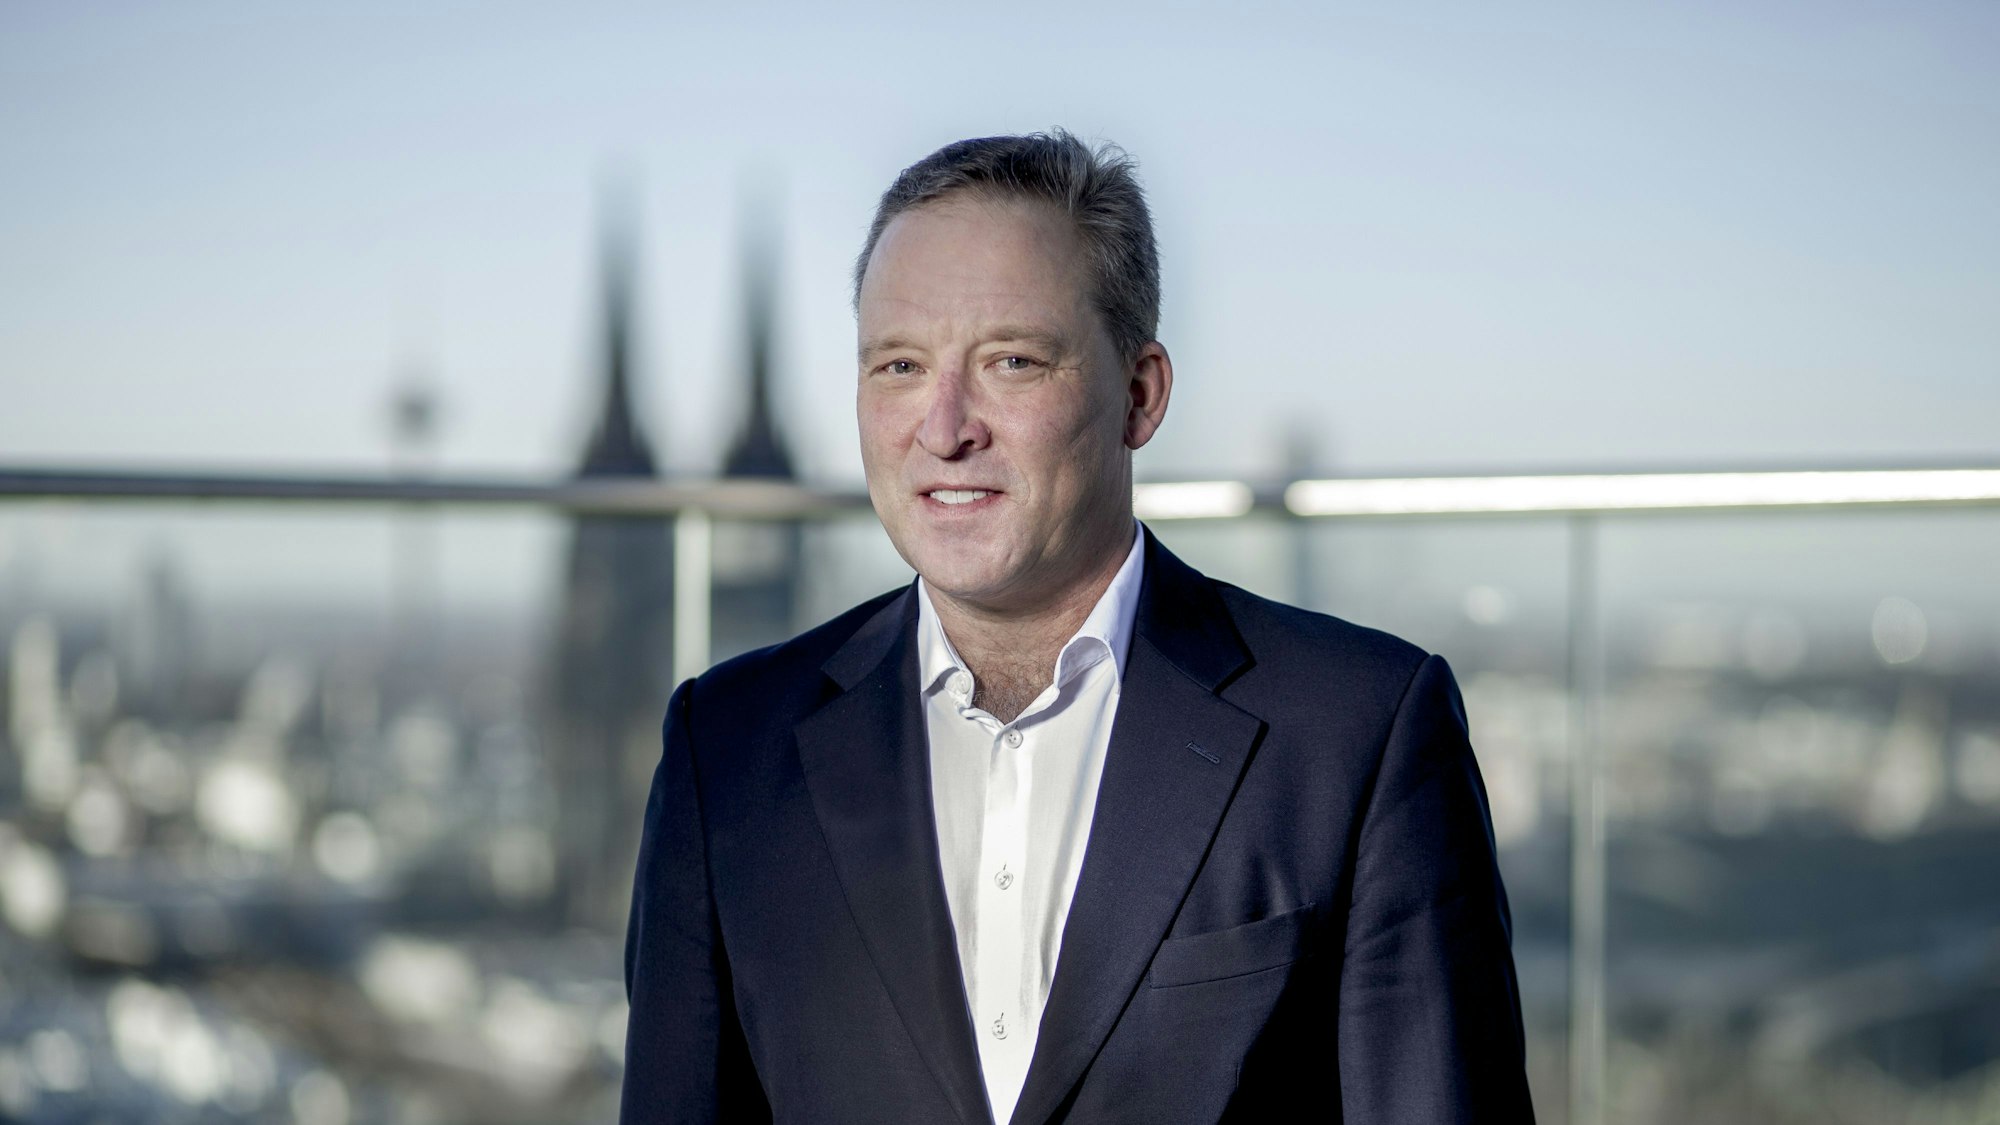 Matthias Zachert, Vorstandsvorsitzender der Lanxess AG, im Interview im Lanxess-Tower in Köln Deutz.